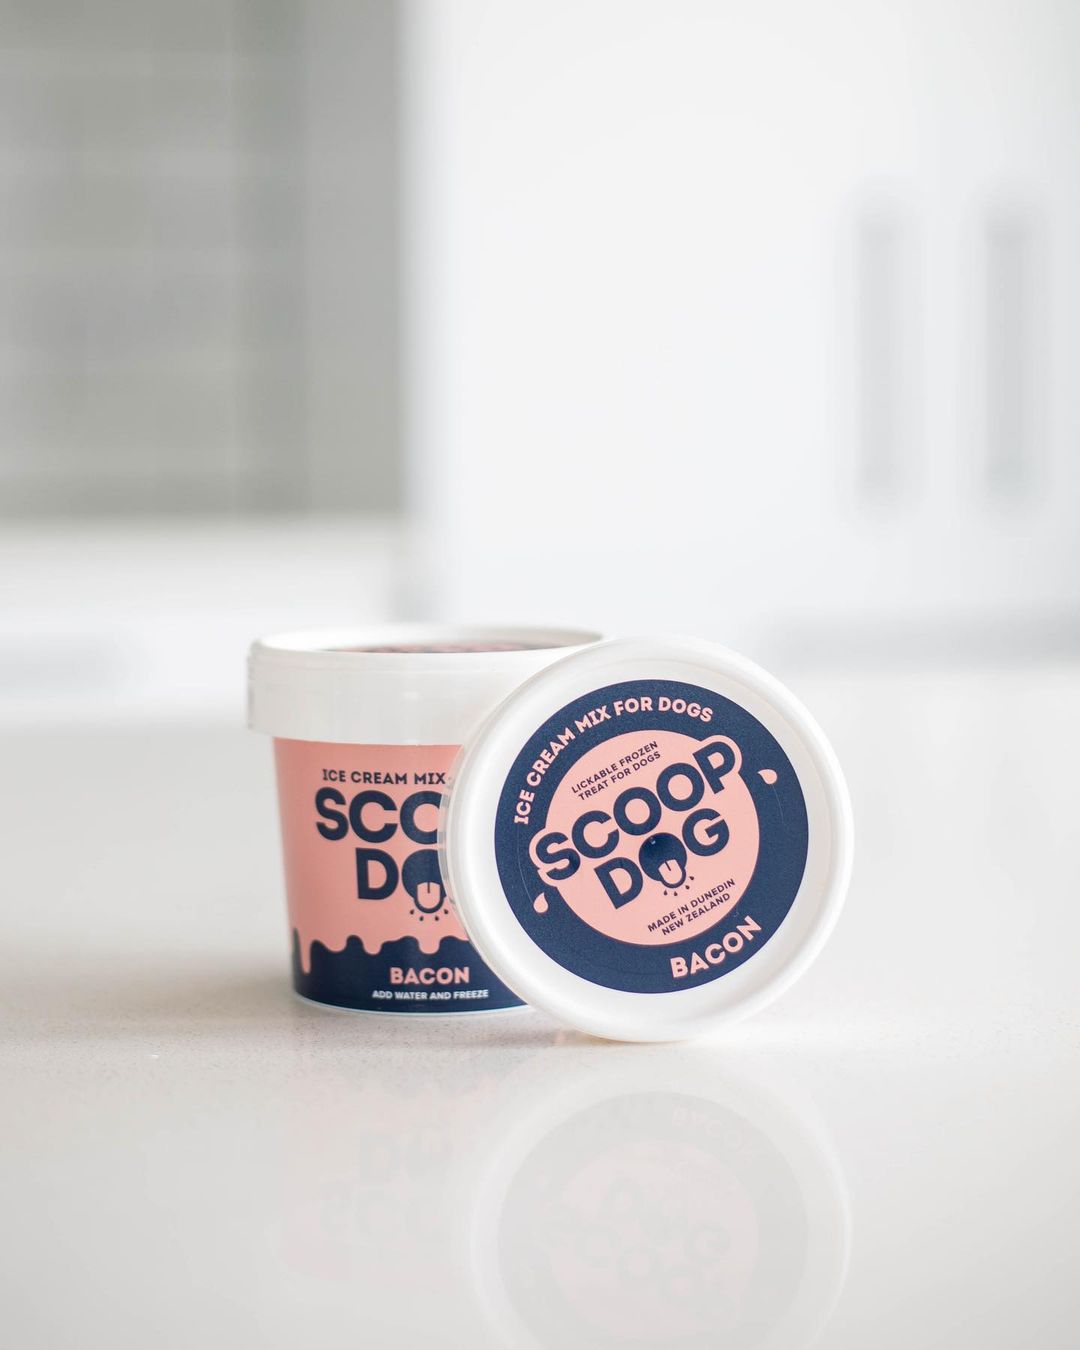 Bacon Ice Cream Mix - Scoop Dog  